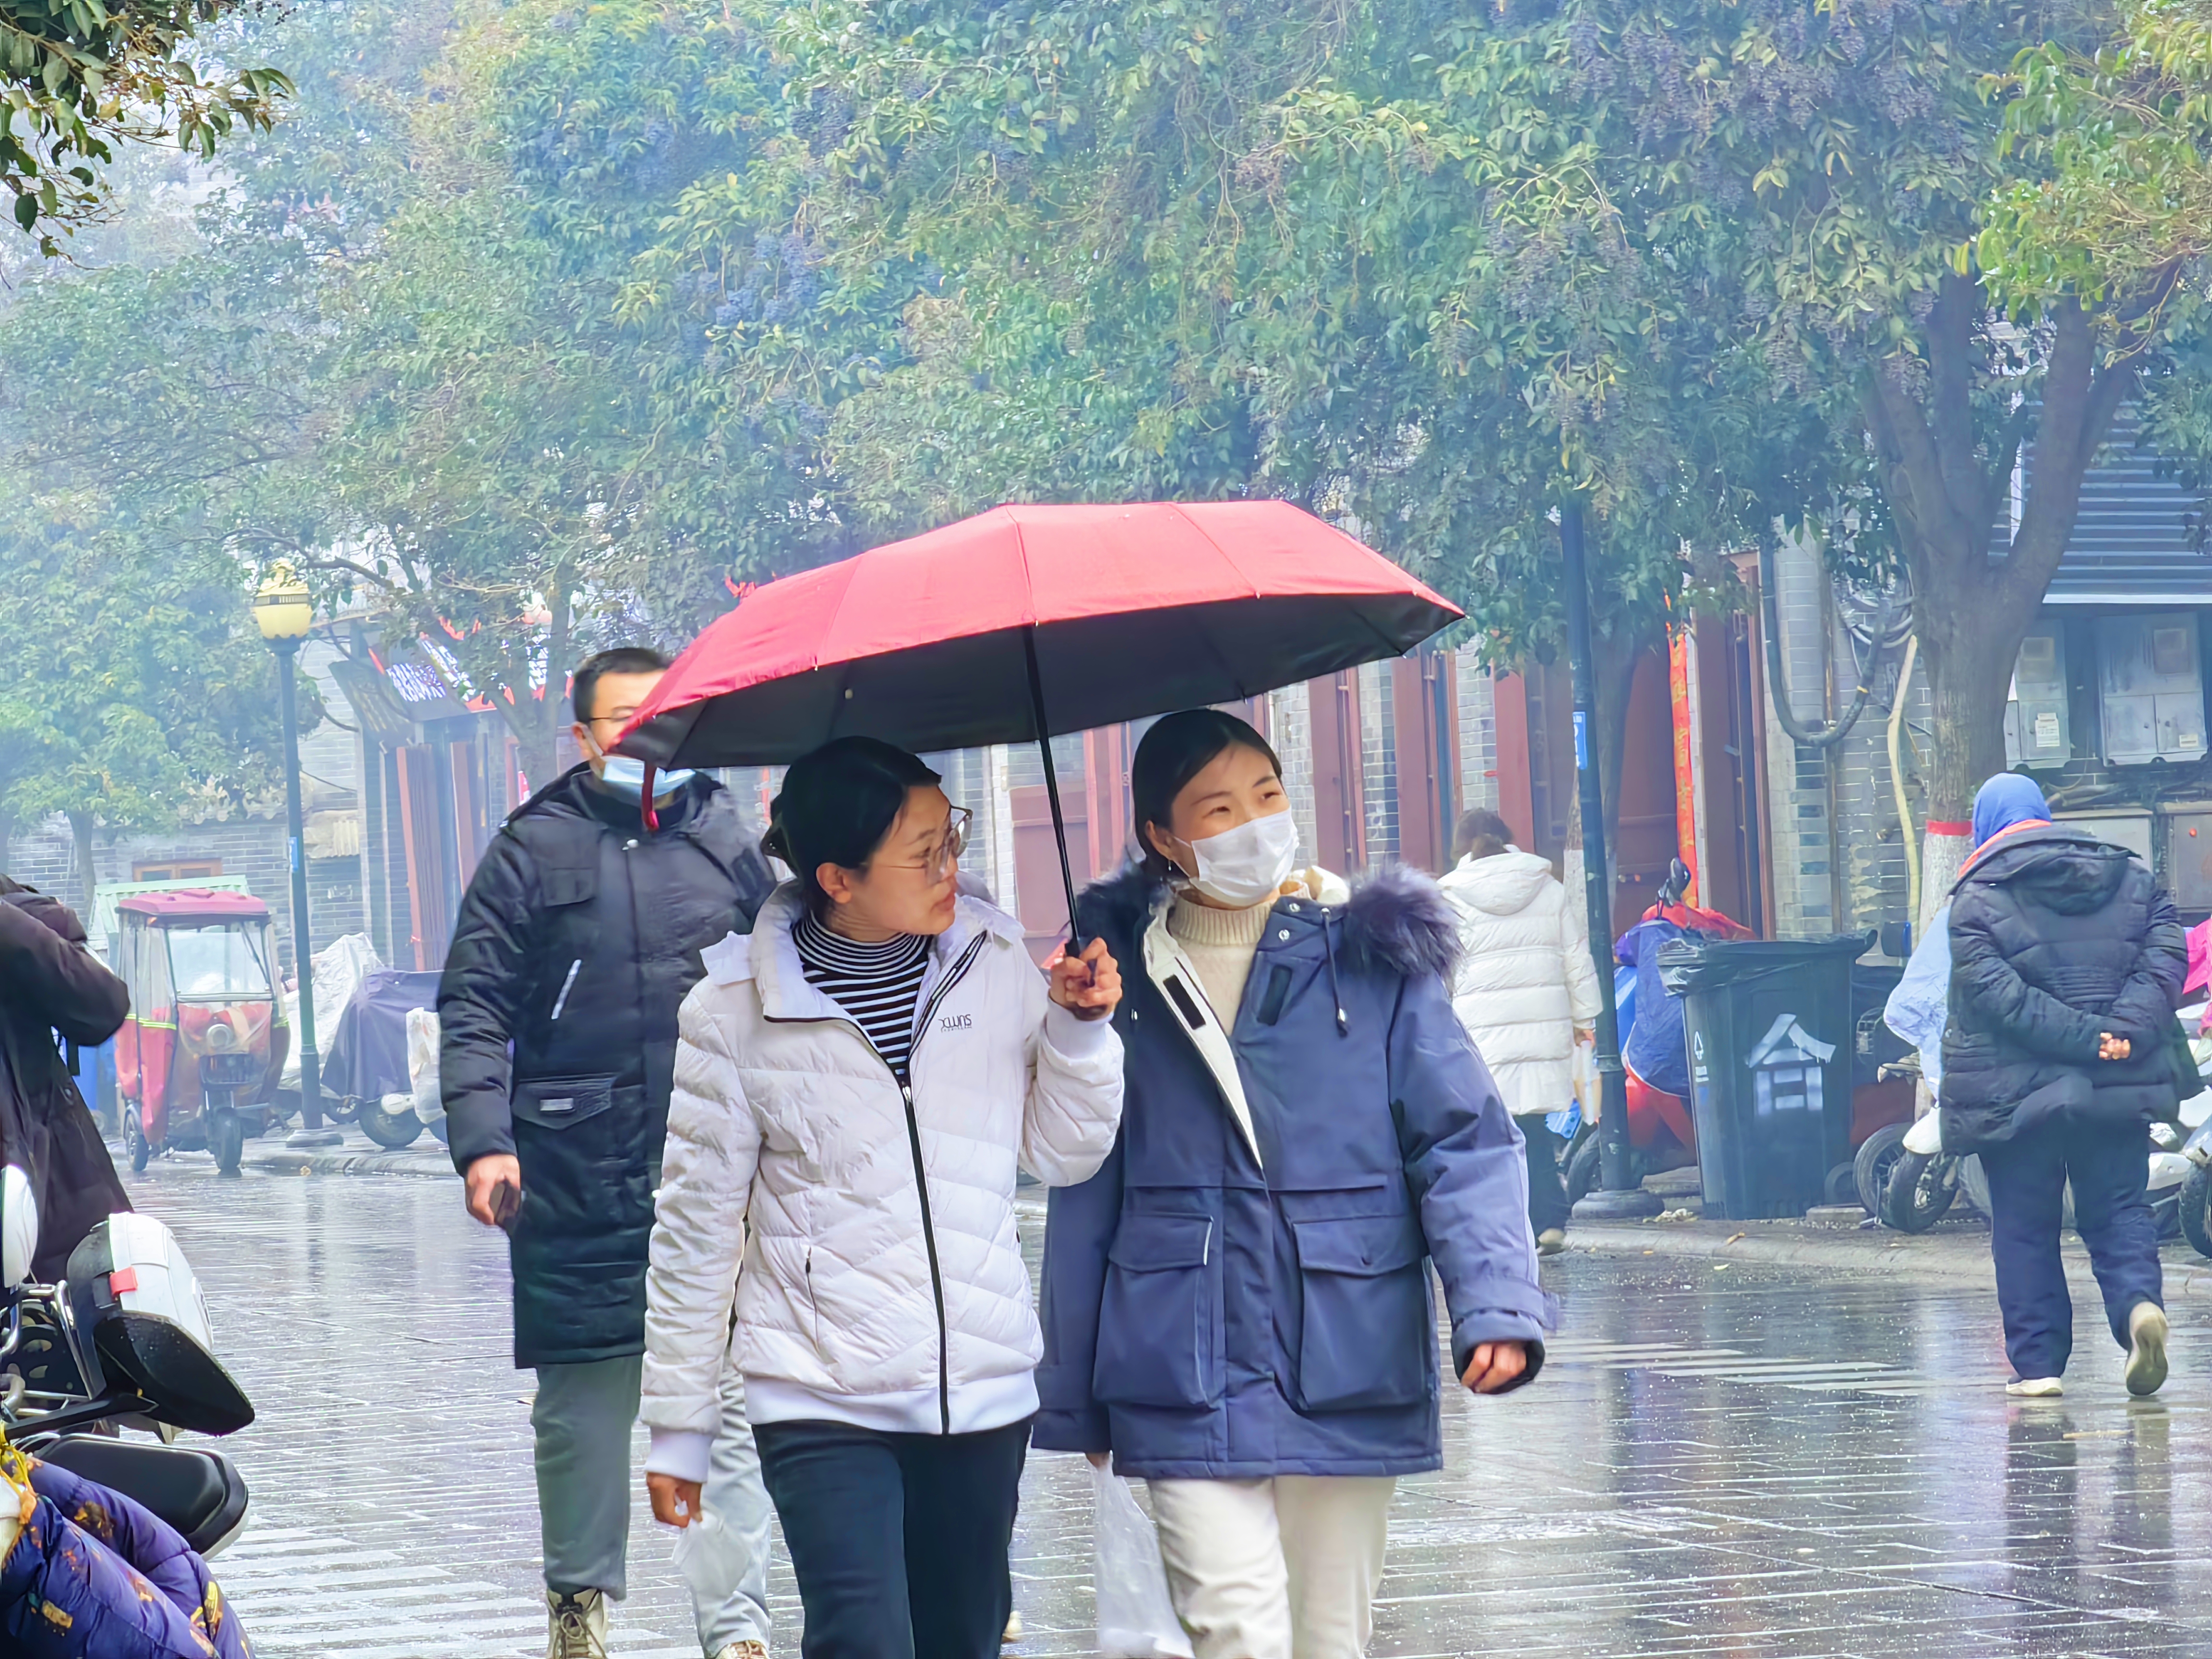 2月9日，一场春雨滋润古城，空气湿润。市民在细雨中欣赏古城朦胧美，绿化工人修剪、补栽花木，美化城市环境。全媒体记者 石斐 摄